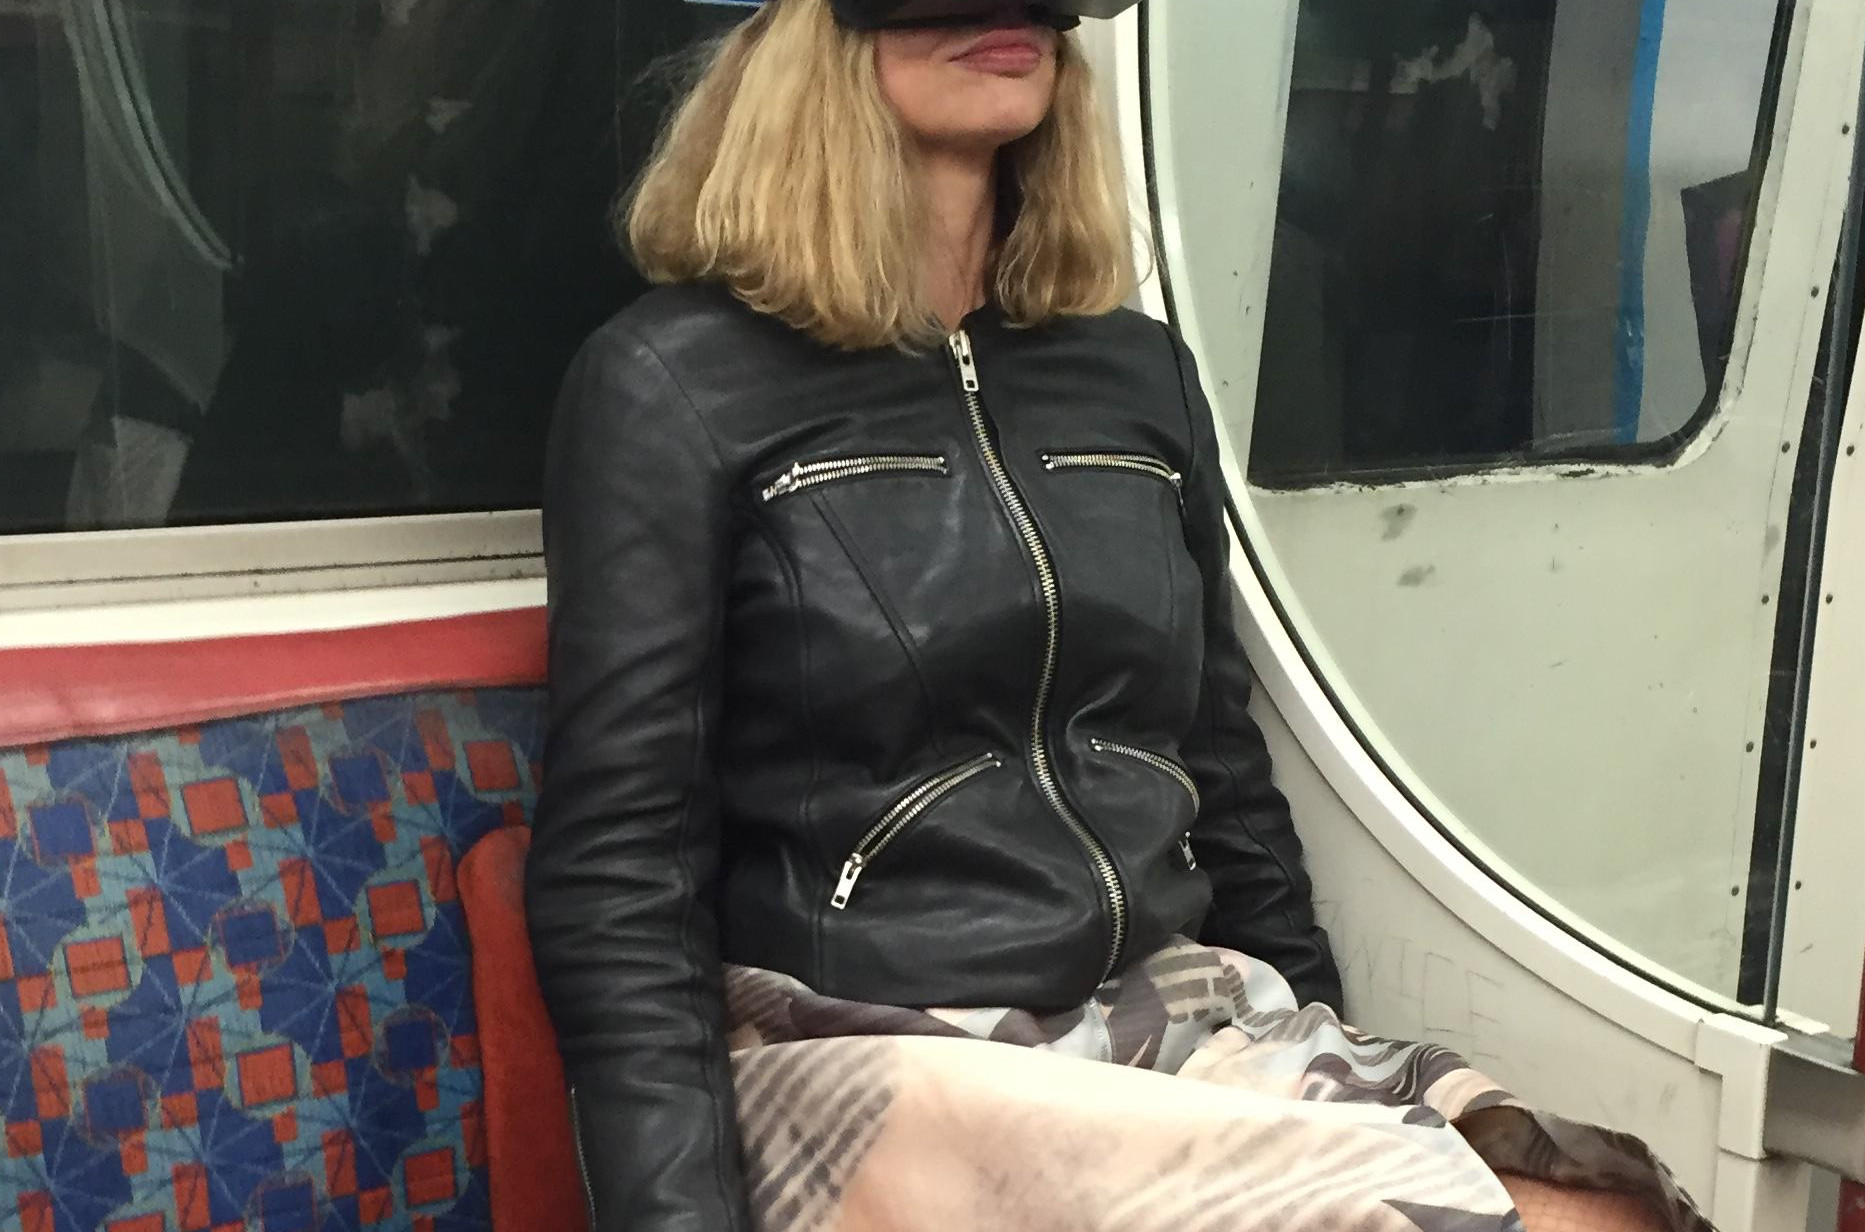 ロンドン地下鉄でバーチャルリアリティーヘッドセットOculus Riftをつけた通勤中の女性が目撃される